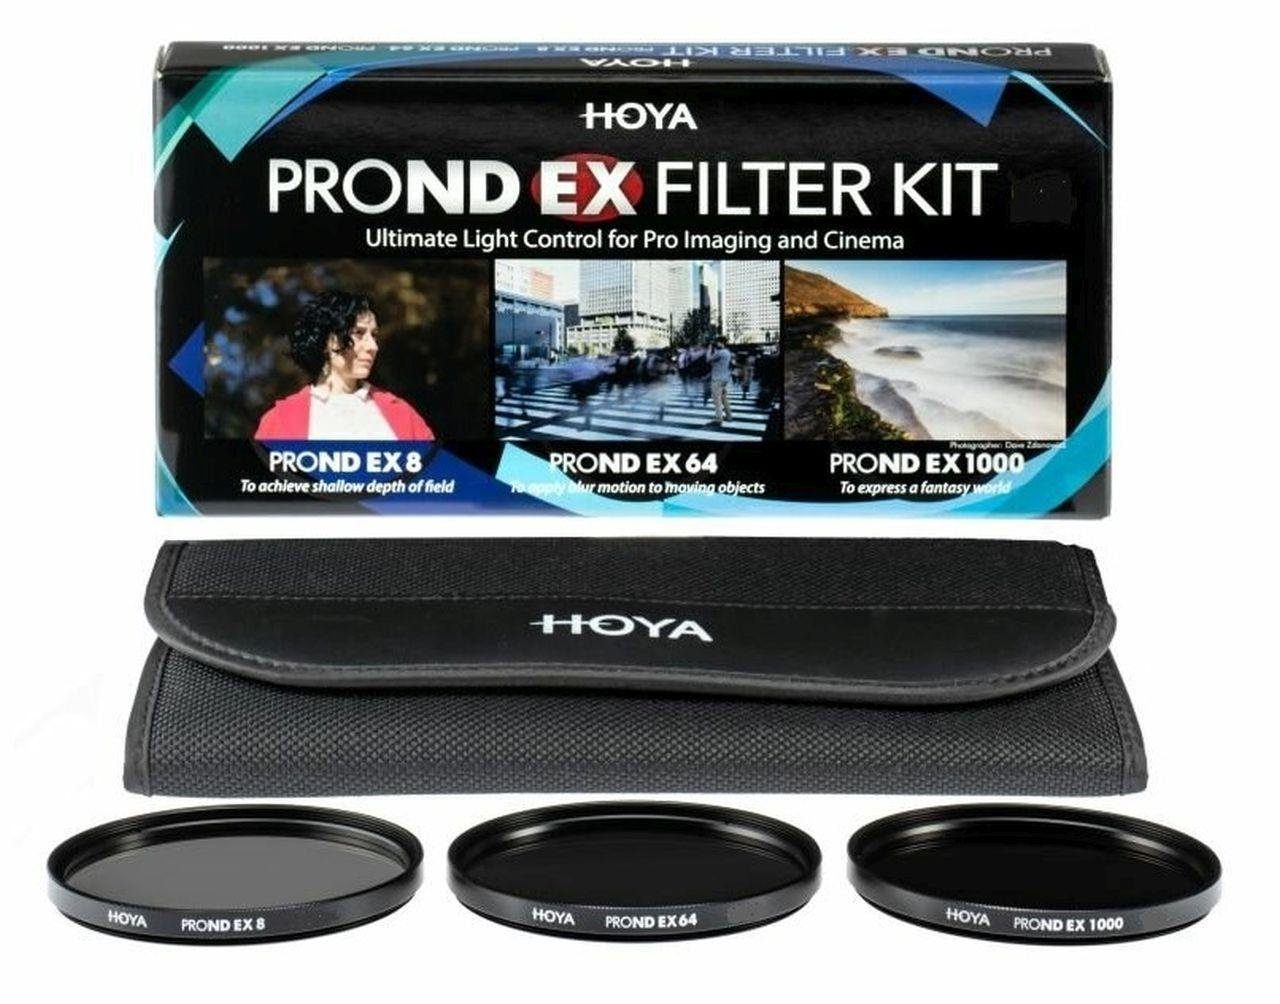 Hoya PROND EX ND Filter Set 8/64/1000 67mm Objektivzubehör